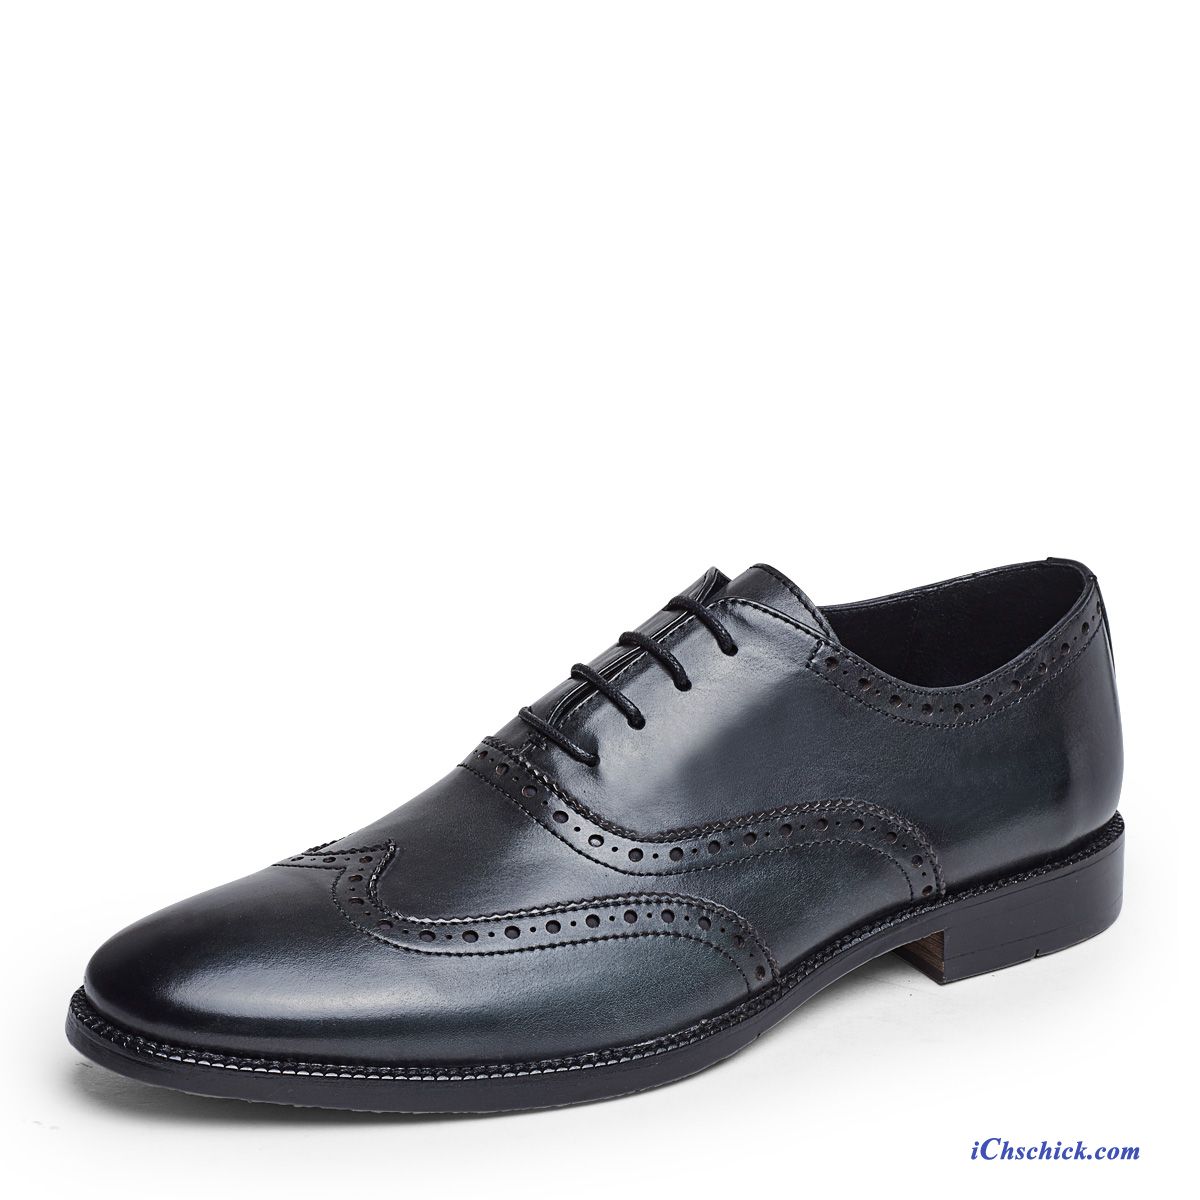 Leder Schuhe Herren Blau, Italienische Schuhe Herren Online Billig